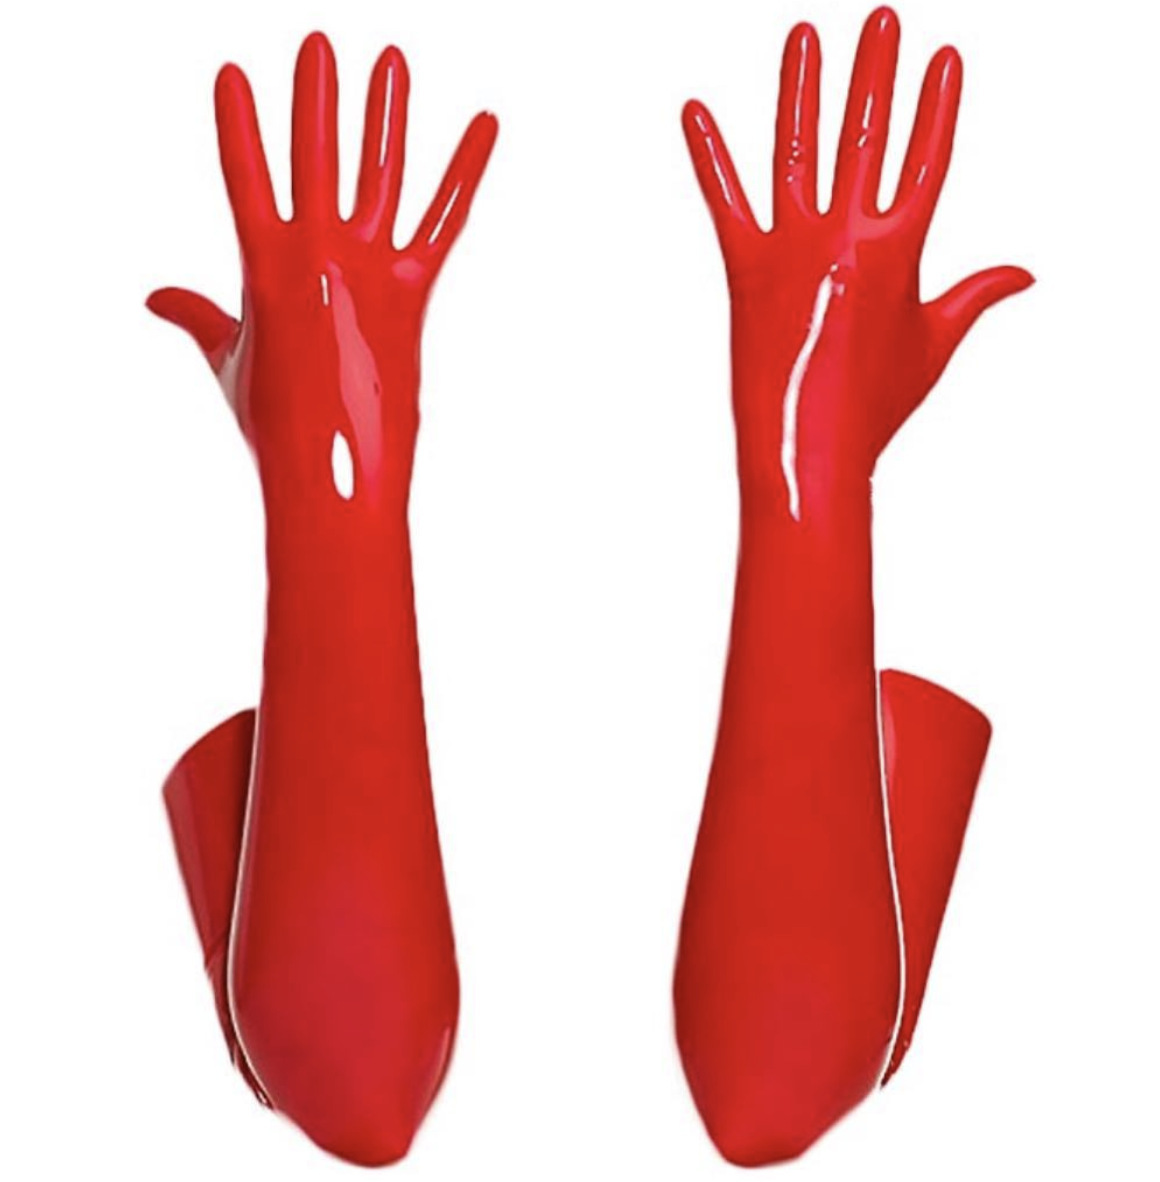 NEW【6825】XLsize 赤 エナメル 光沢 PU 手袋 演出服 ダンス服 レースクイーン 仮装 コスプレ コスチューム道具 パーティーグッズ イベントの画像2